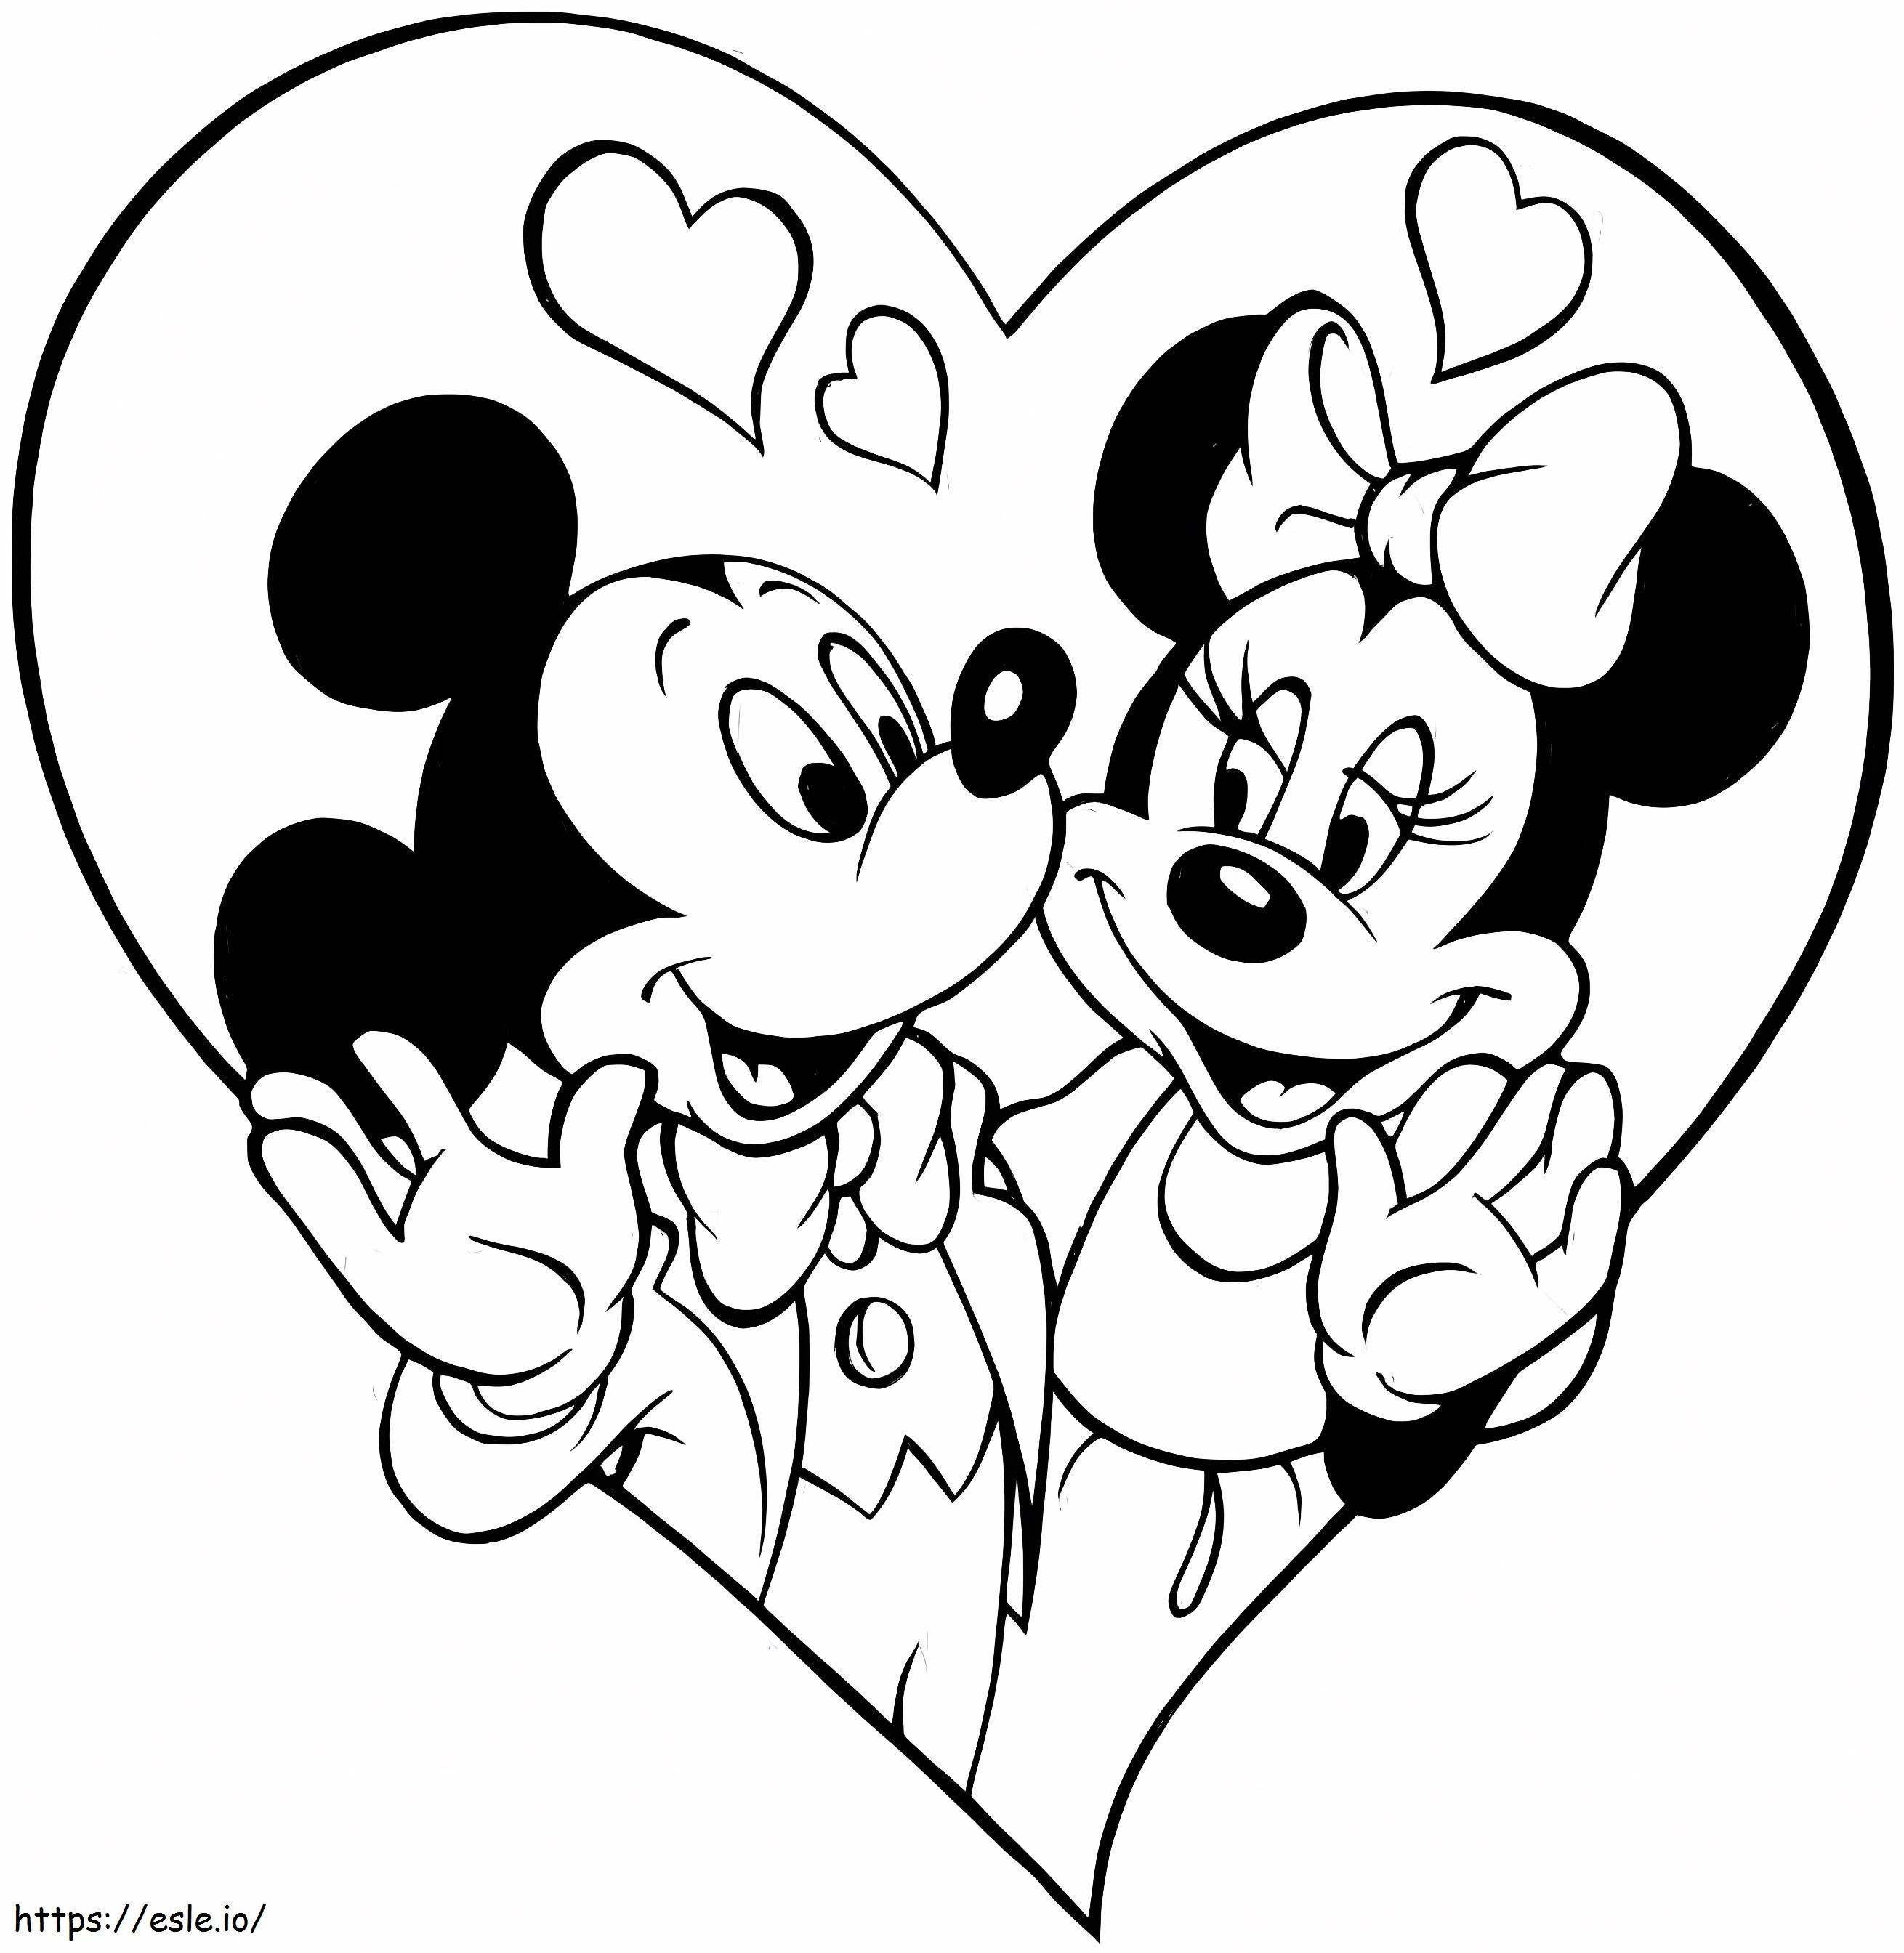 Walentynki Disneya z Myszką Miki kolorowanka